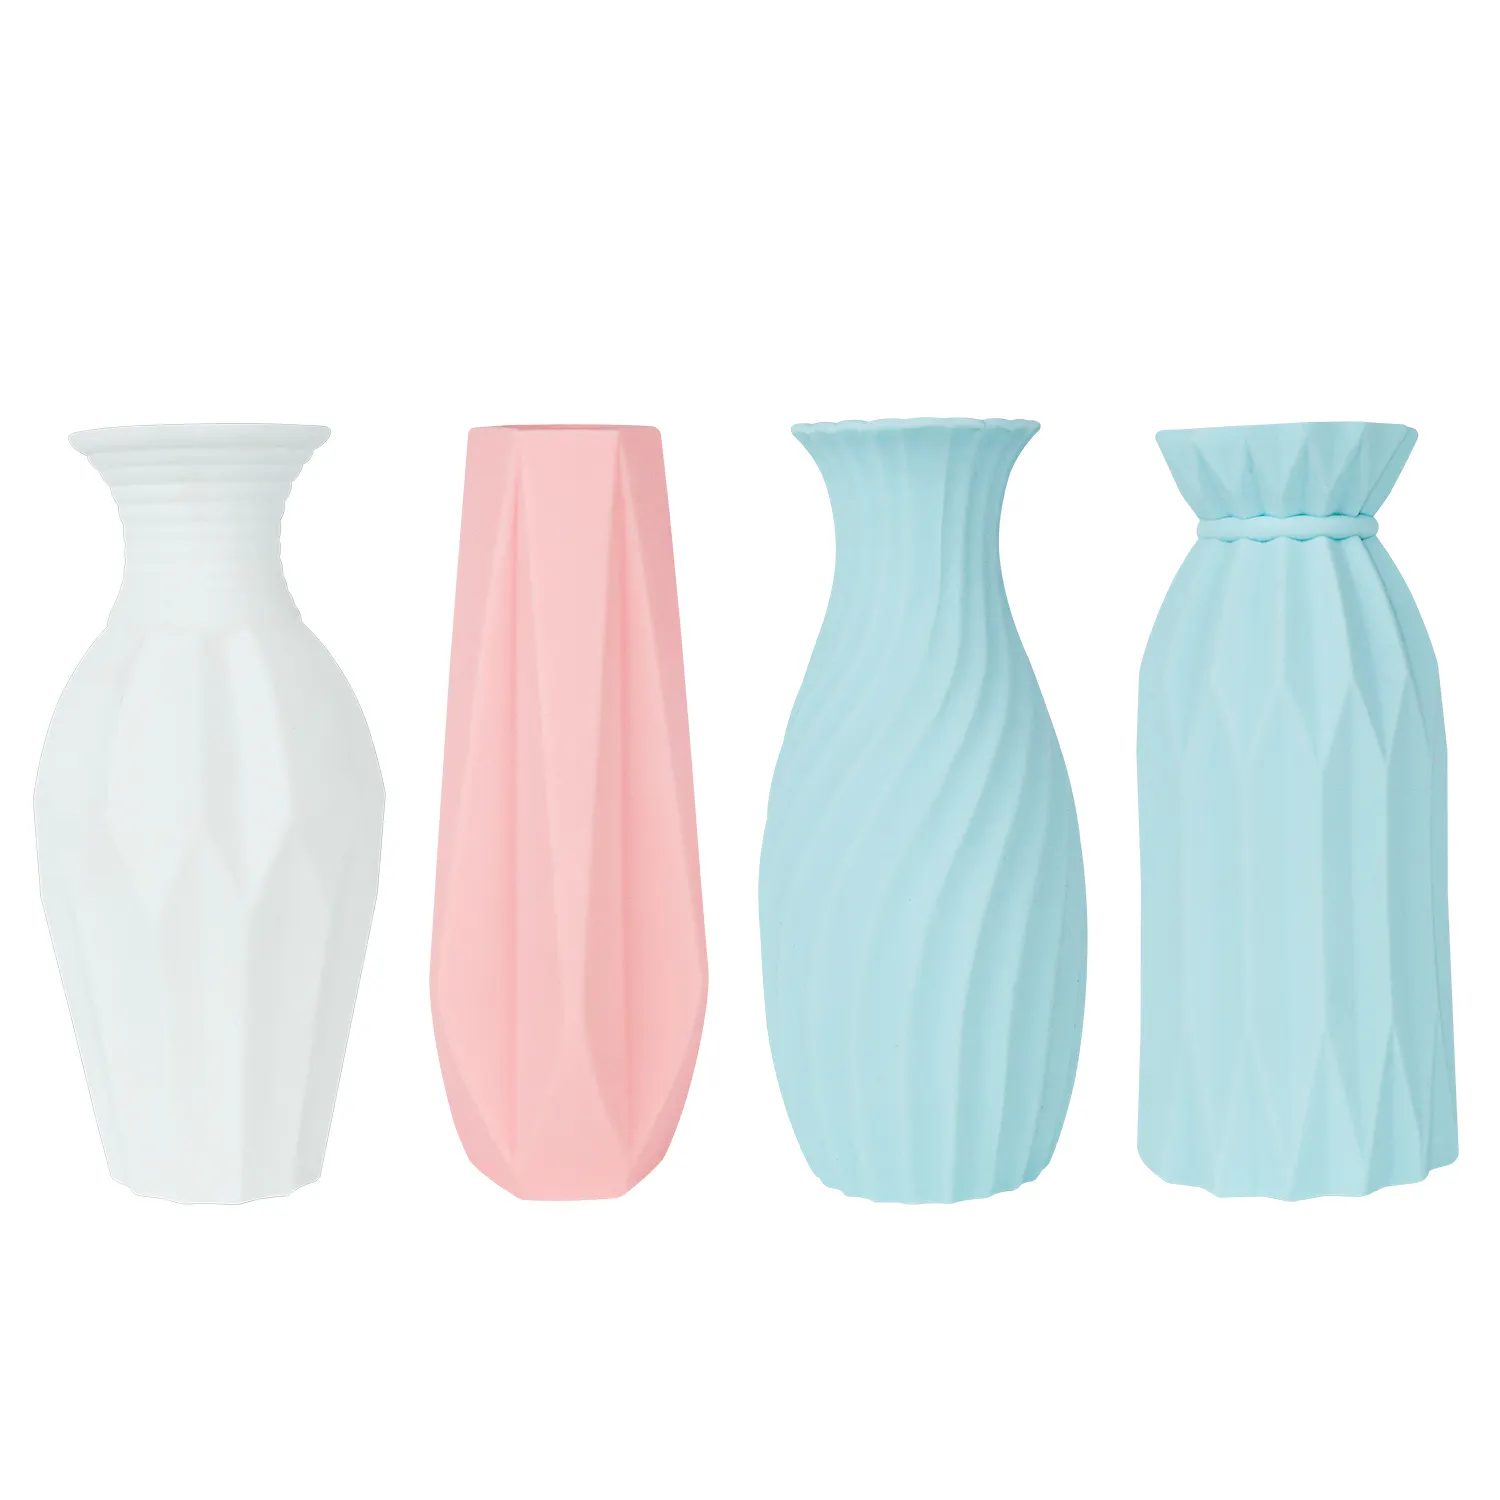 Цветочная ваза Florero De Silicona геометрической формы, Современная декоративная растительная Цветочная кастрюля, небьющаяся силиконовая Цветочная ваза